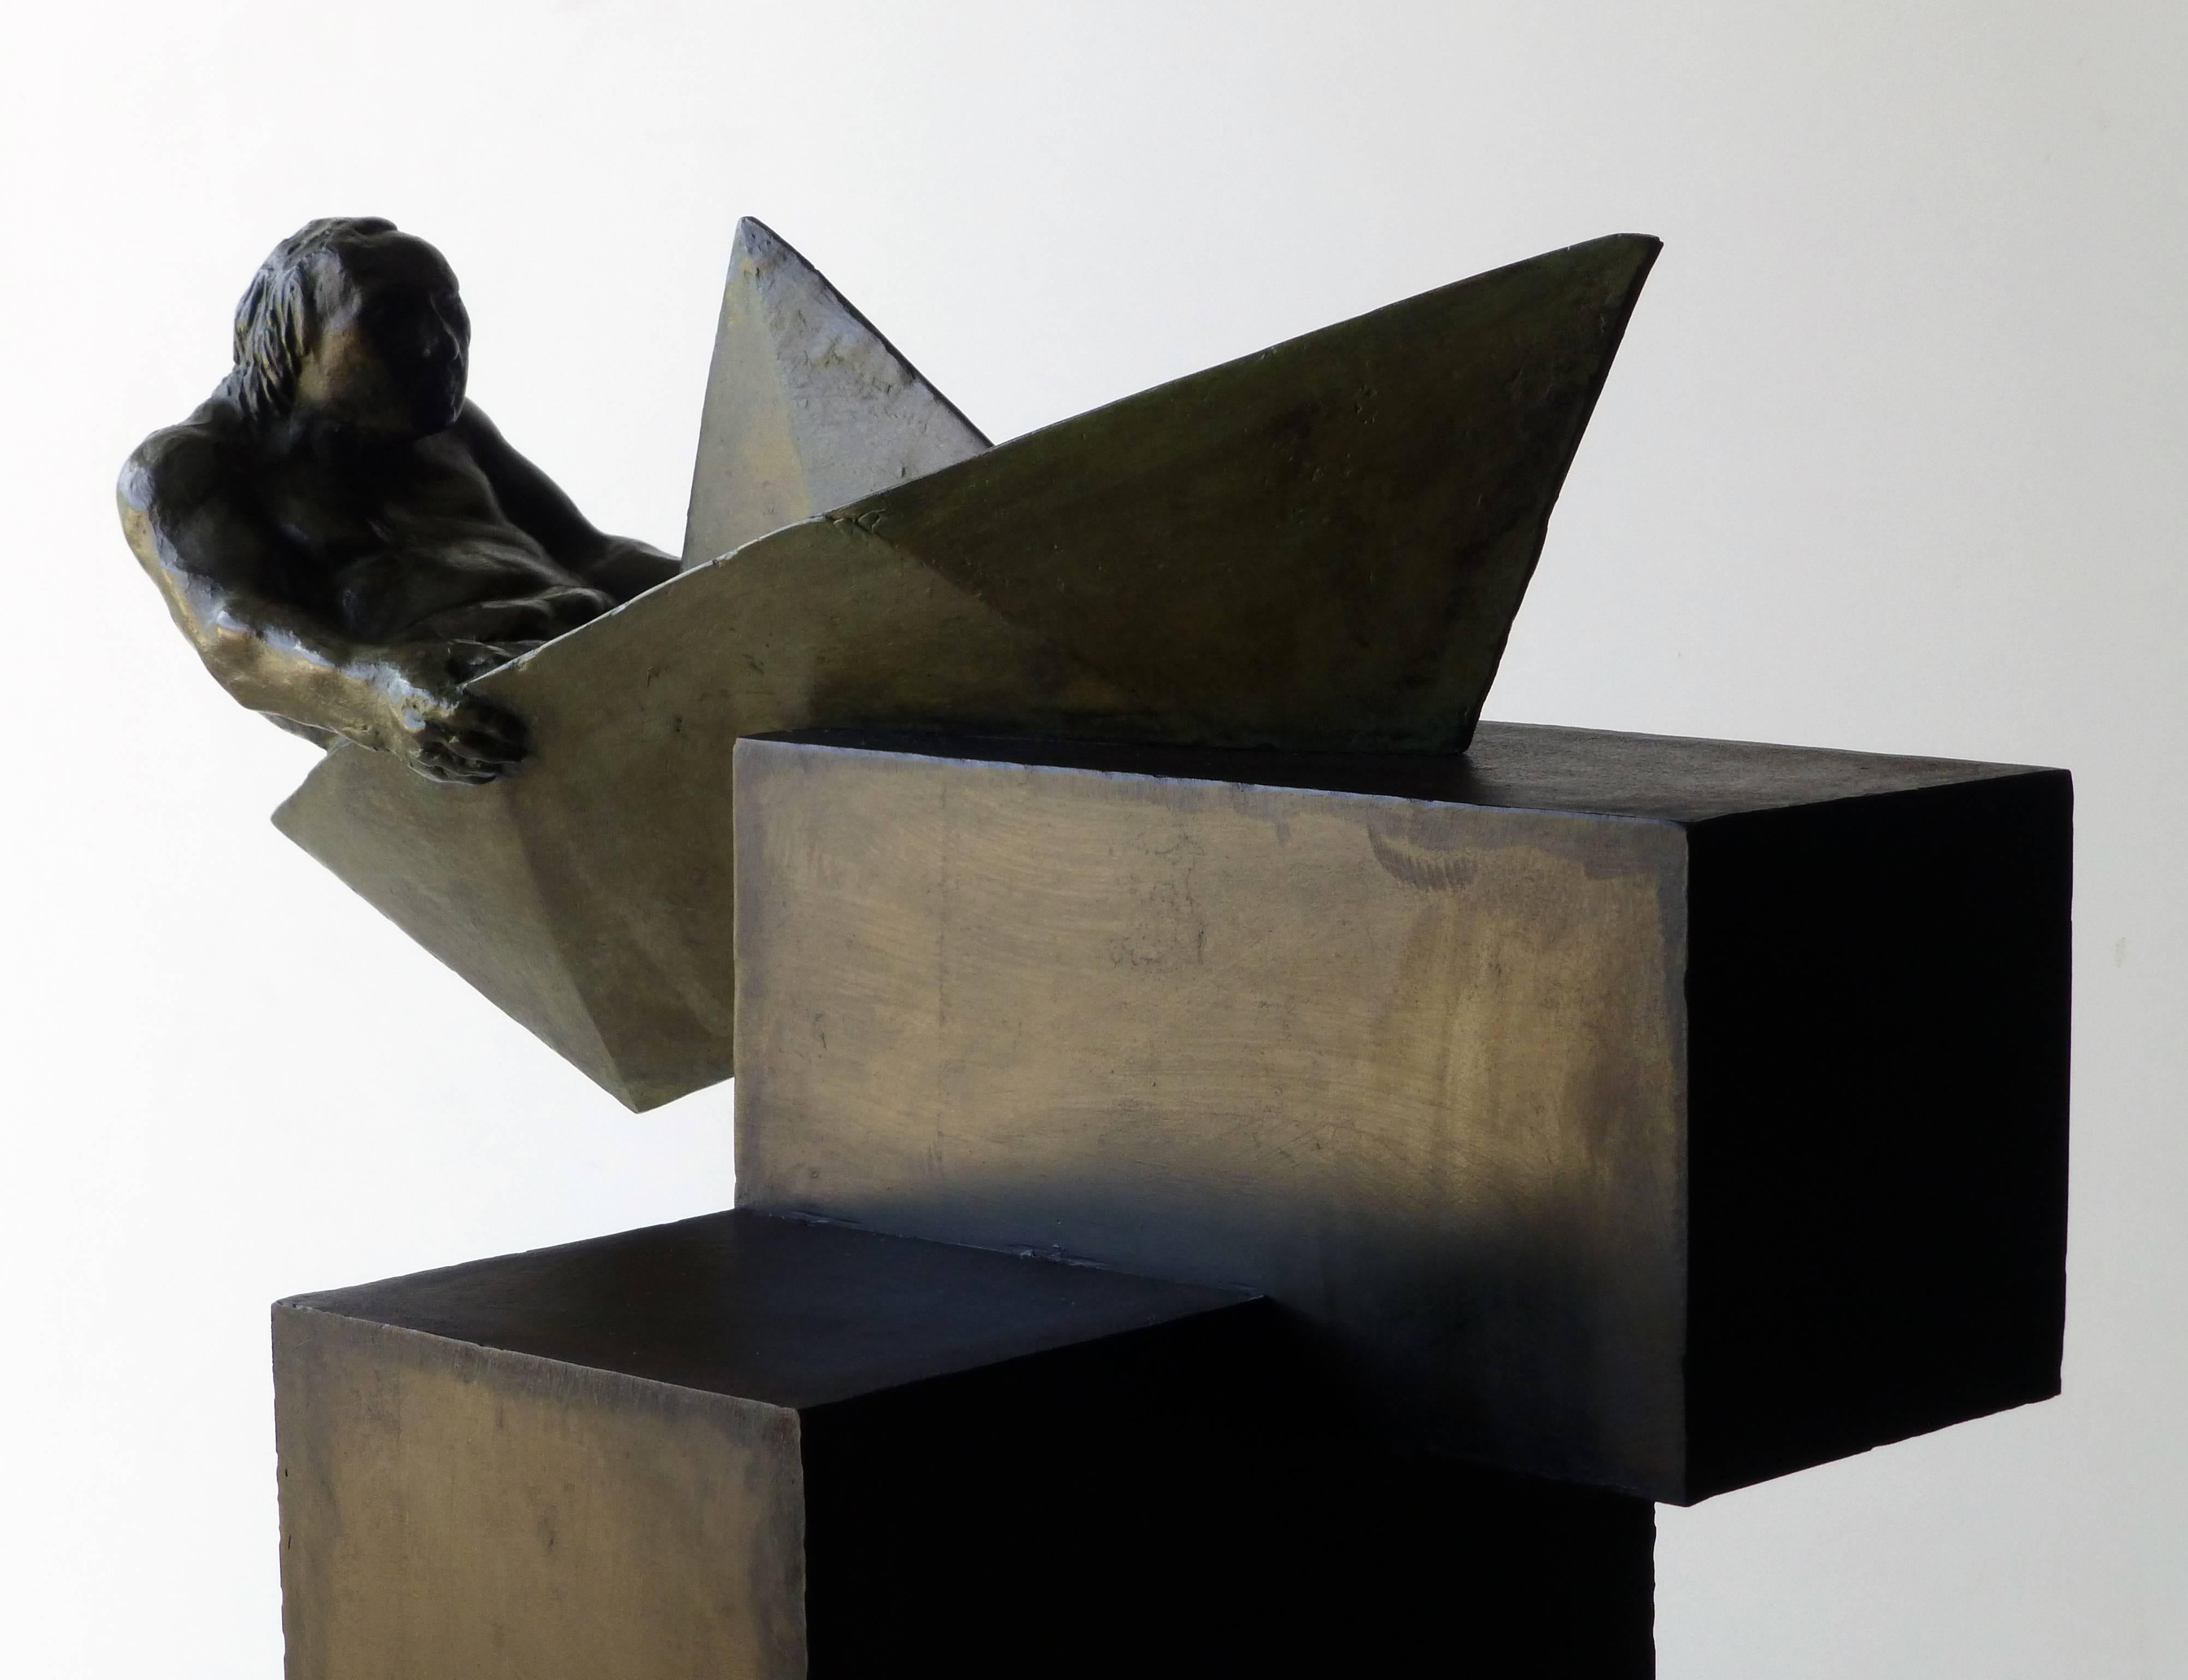 Sculpture de l'artiste espagnol AMANCIO GONZALEZ
le bronze.
Série limitée à 7 exemplaires.
Fantastique pièce d'art représentant la sculpture espagnole
Artiste très populaire en Europe et en Amérique latine
AMANCIO Gonzalez ( Leon 1965 )

Amancio